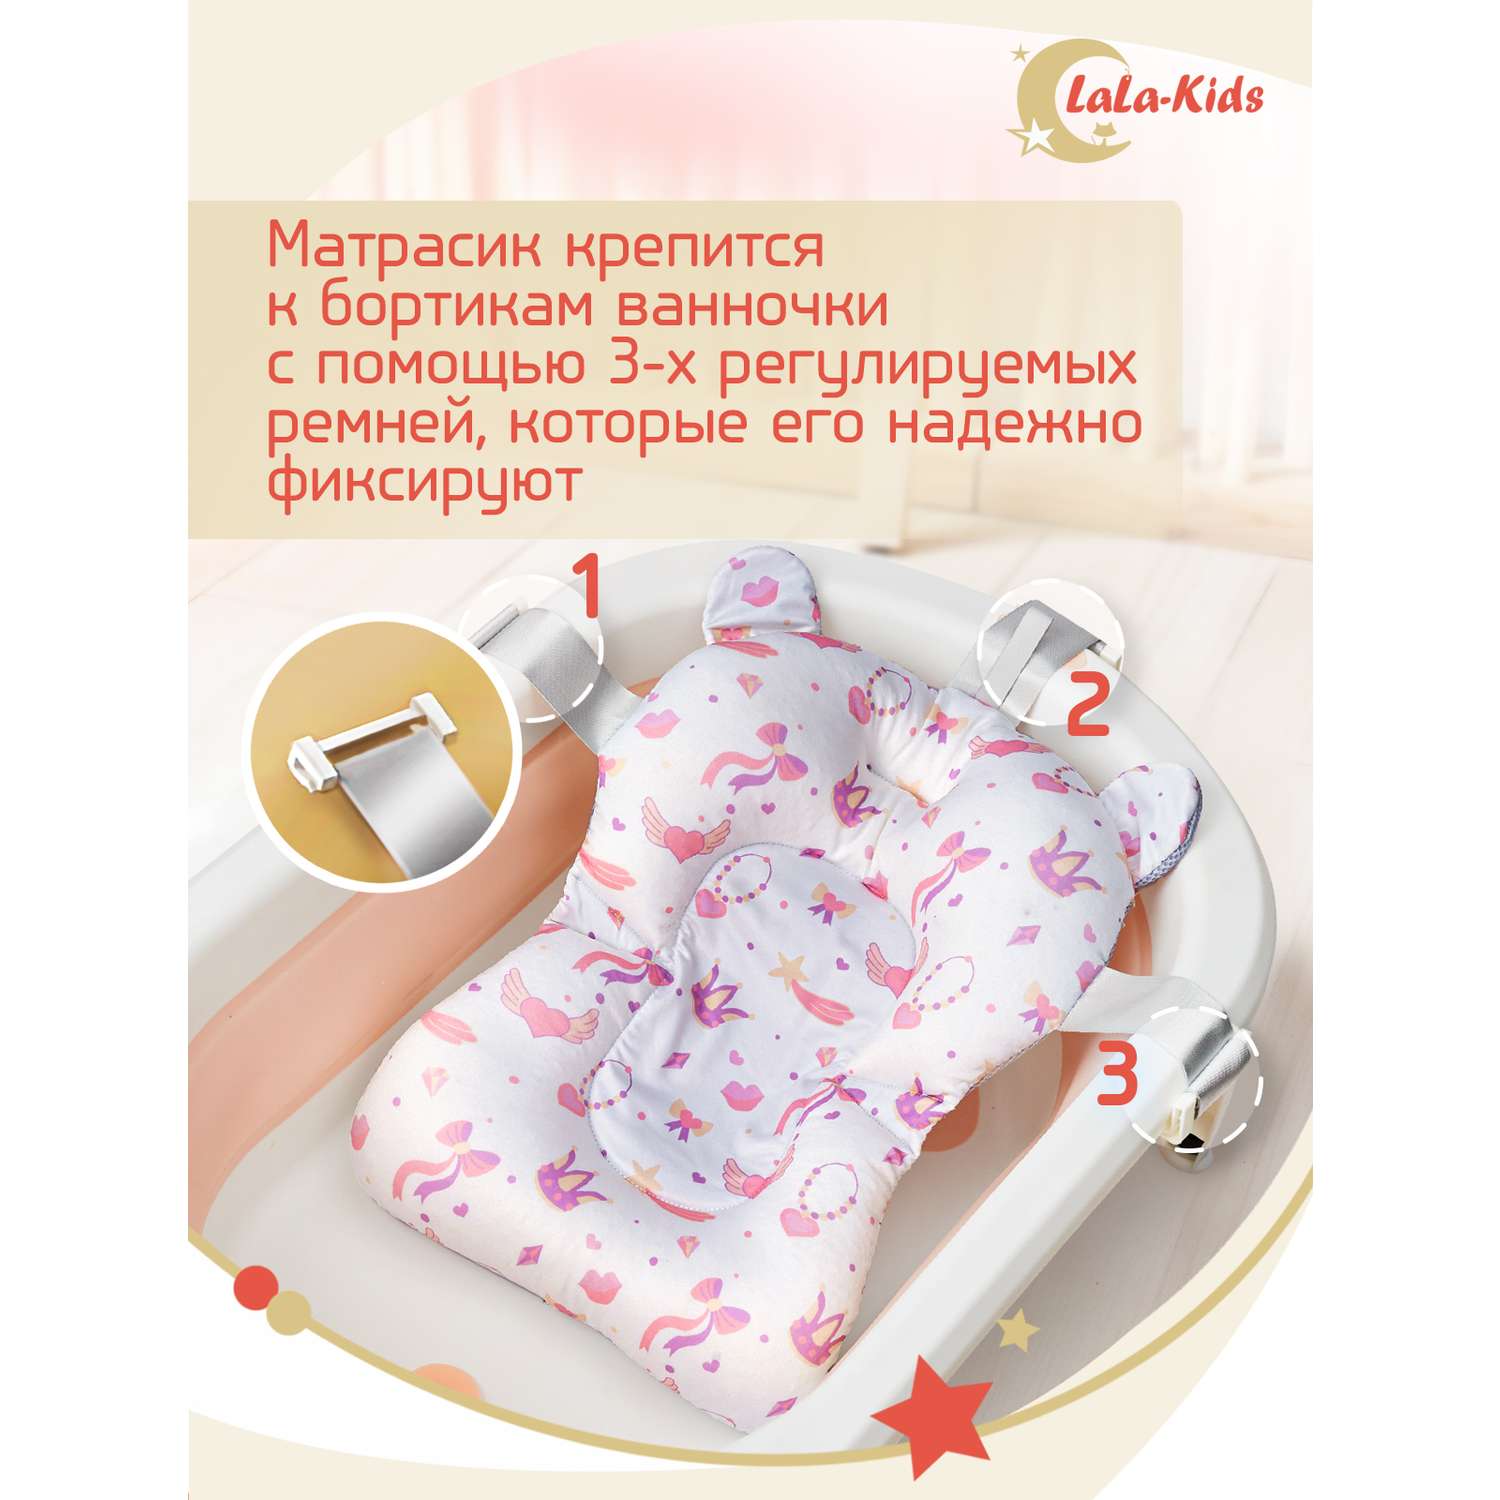 Ванночка для новорожденных LaLa-Kids складная с матрасиком и термометром в комплекте - фото 16